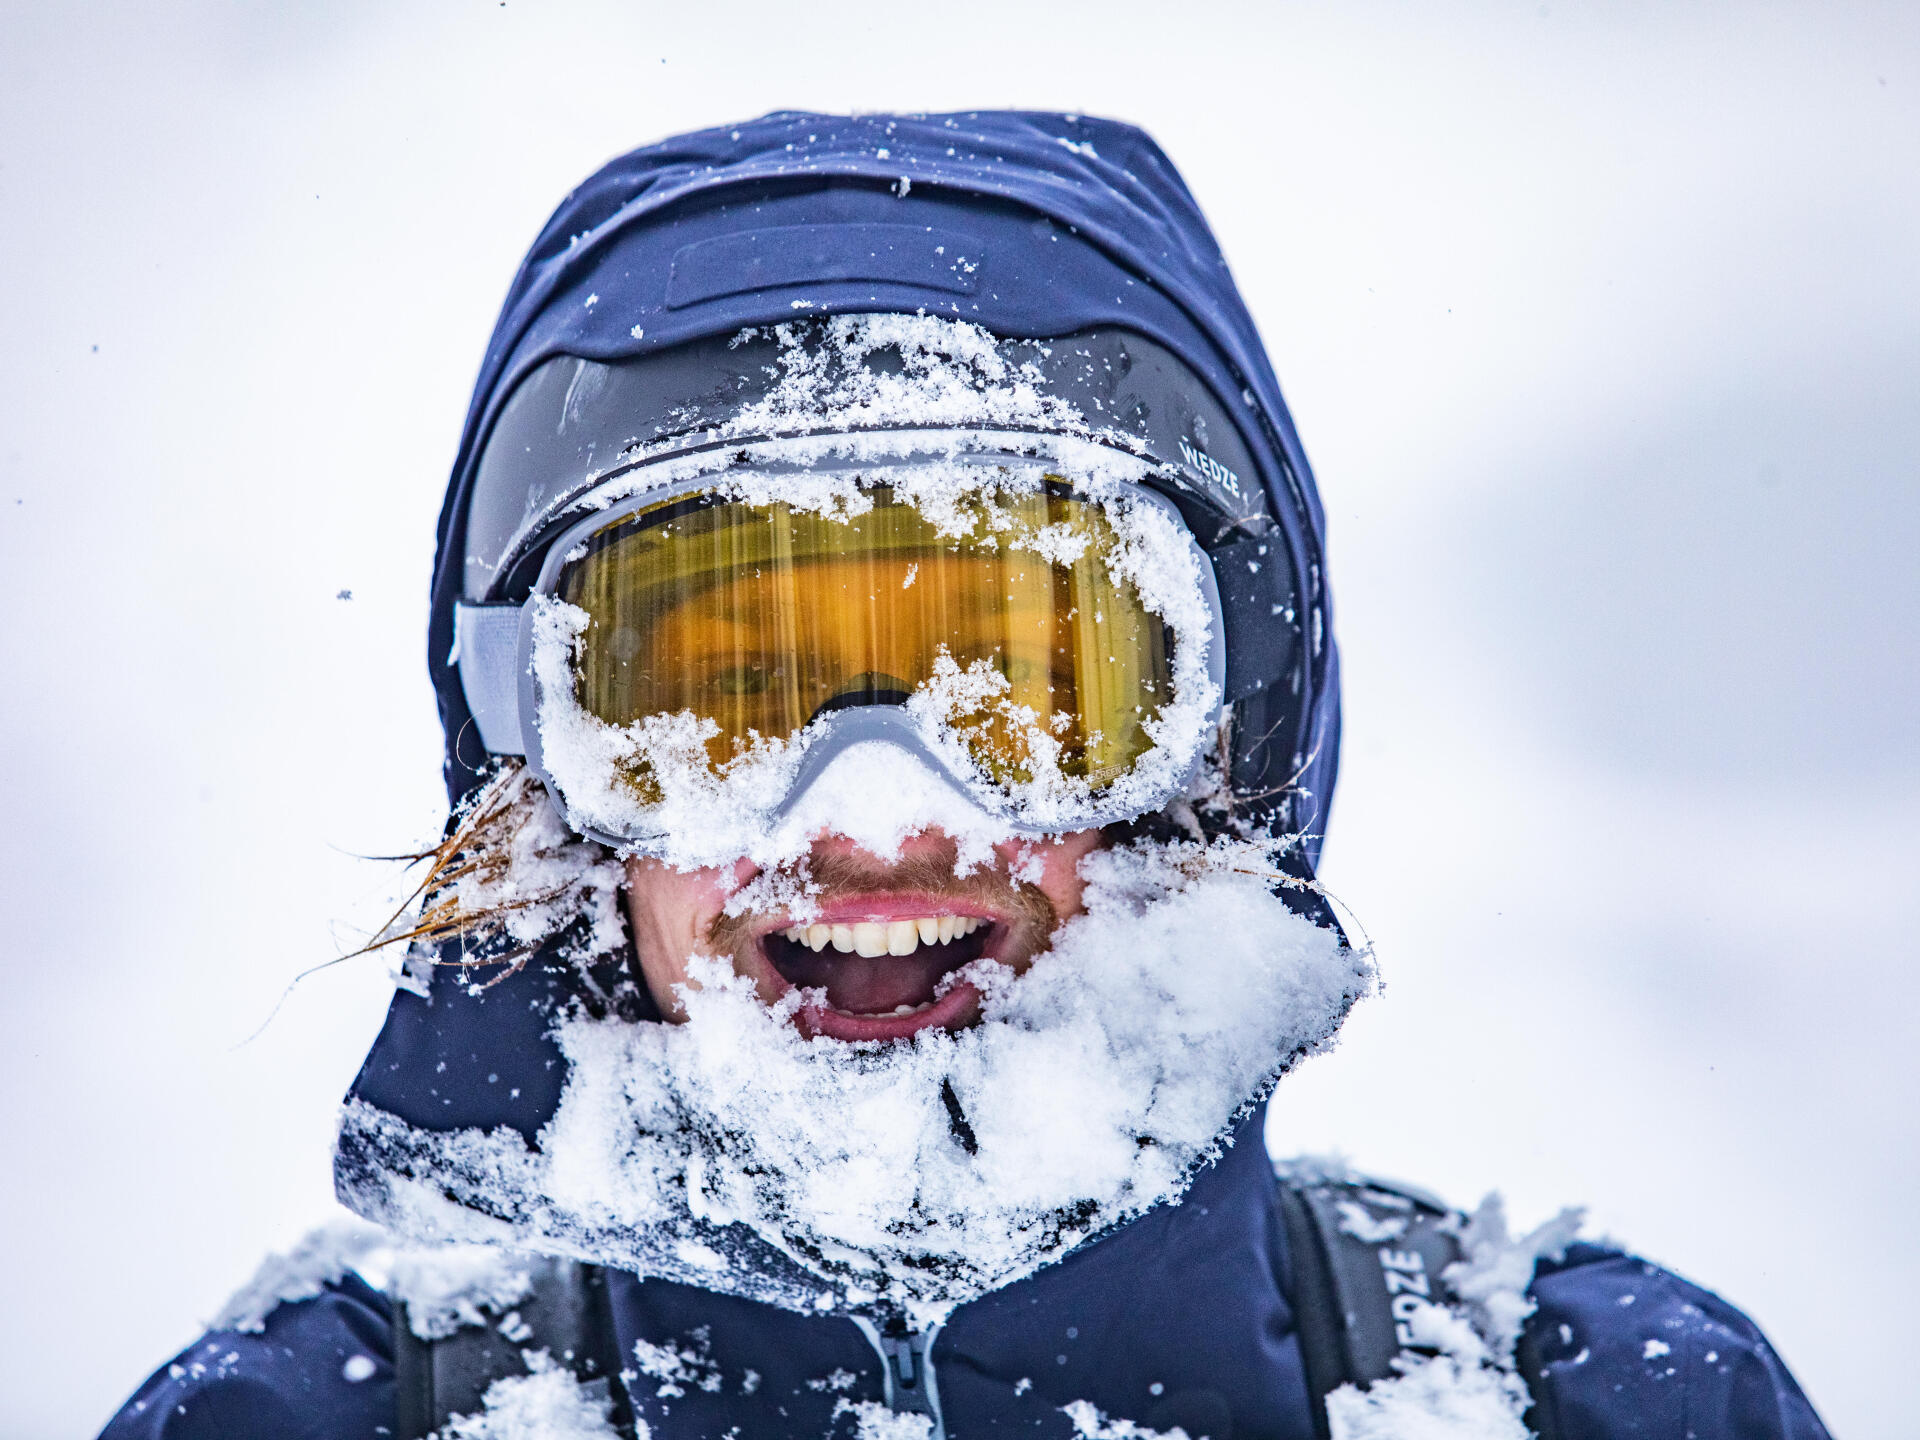  Un homme avec le visage plein de neige protégé par des lunettes de ski